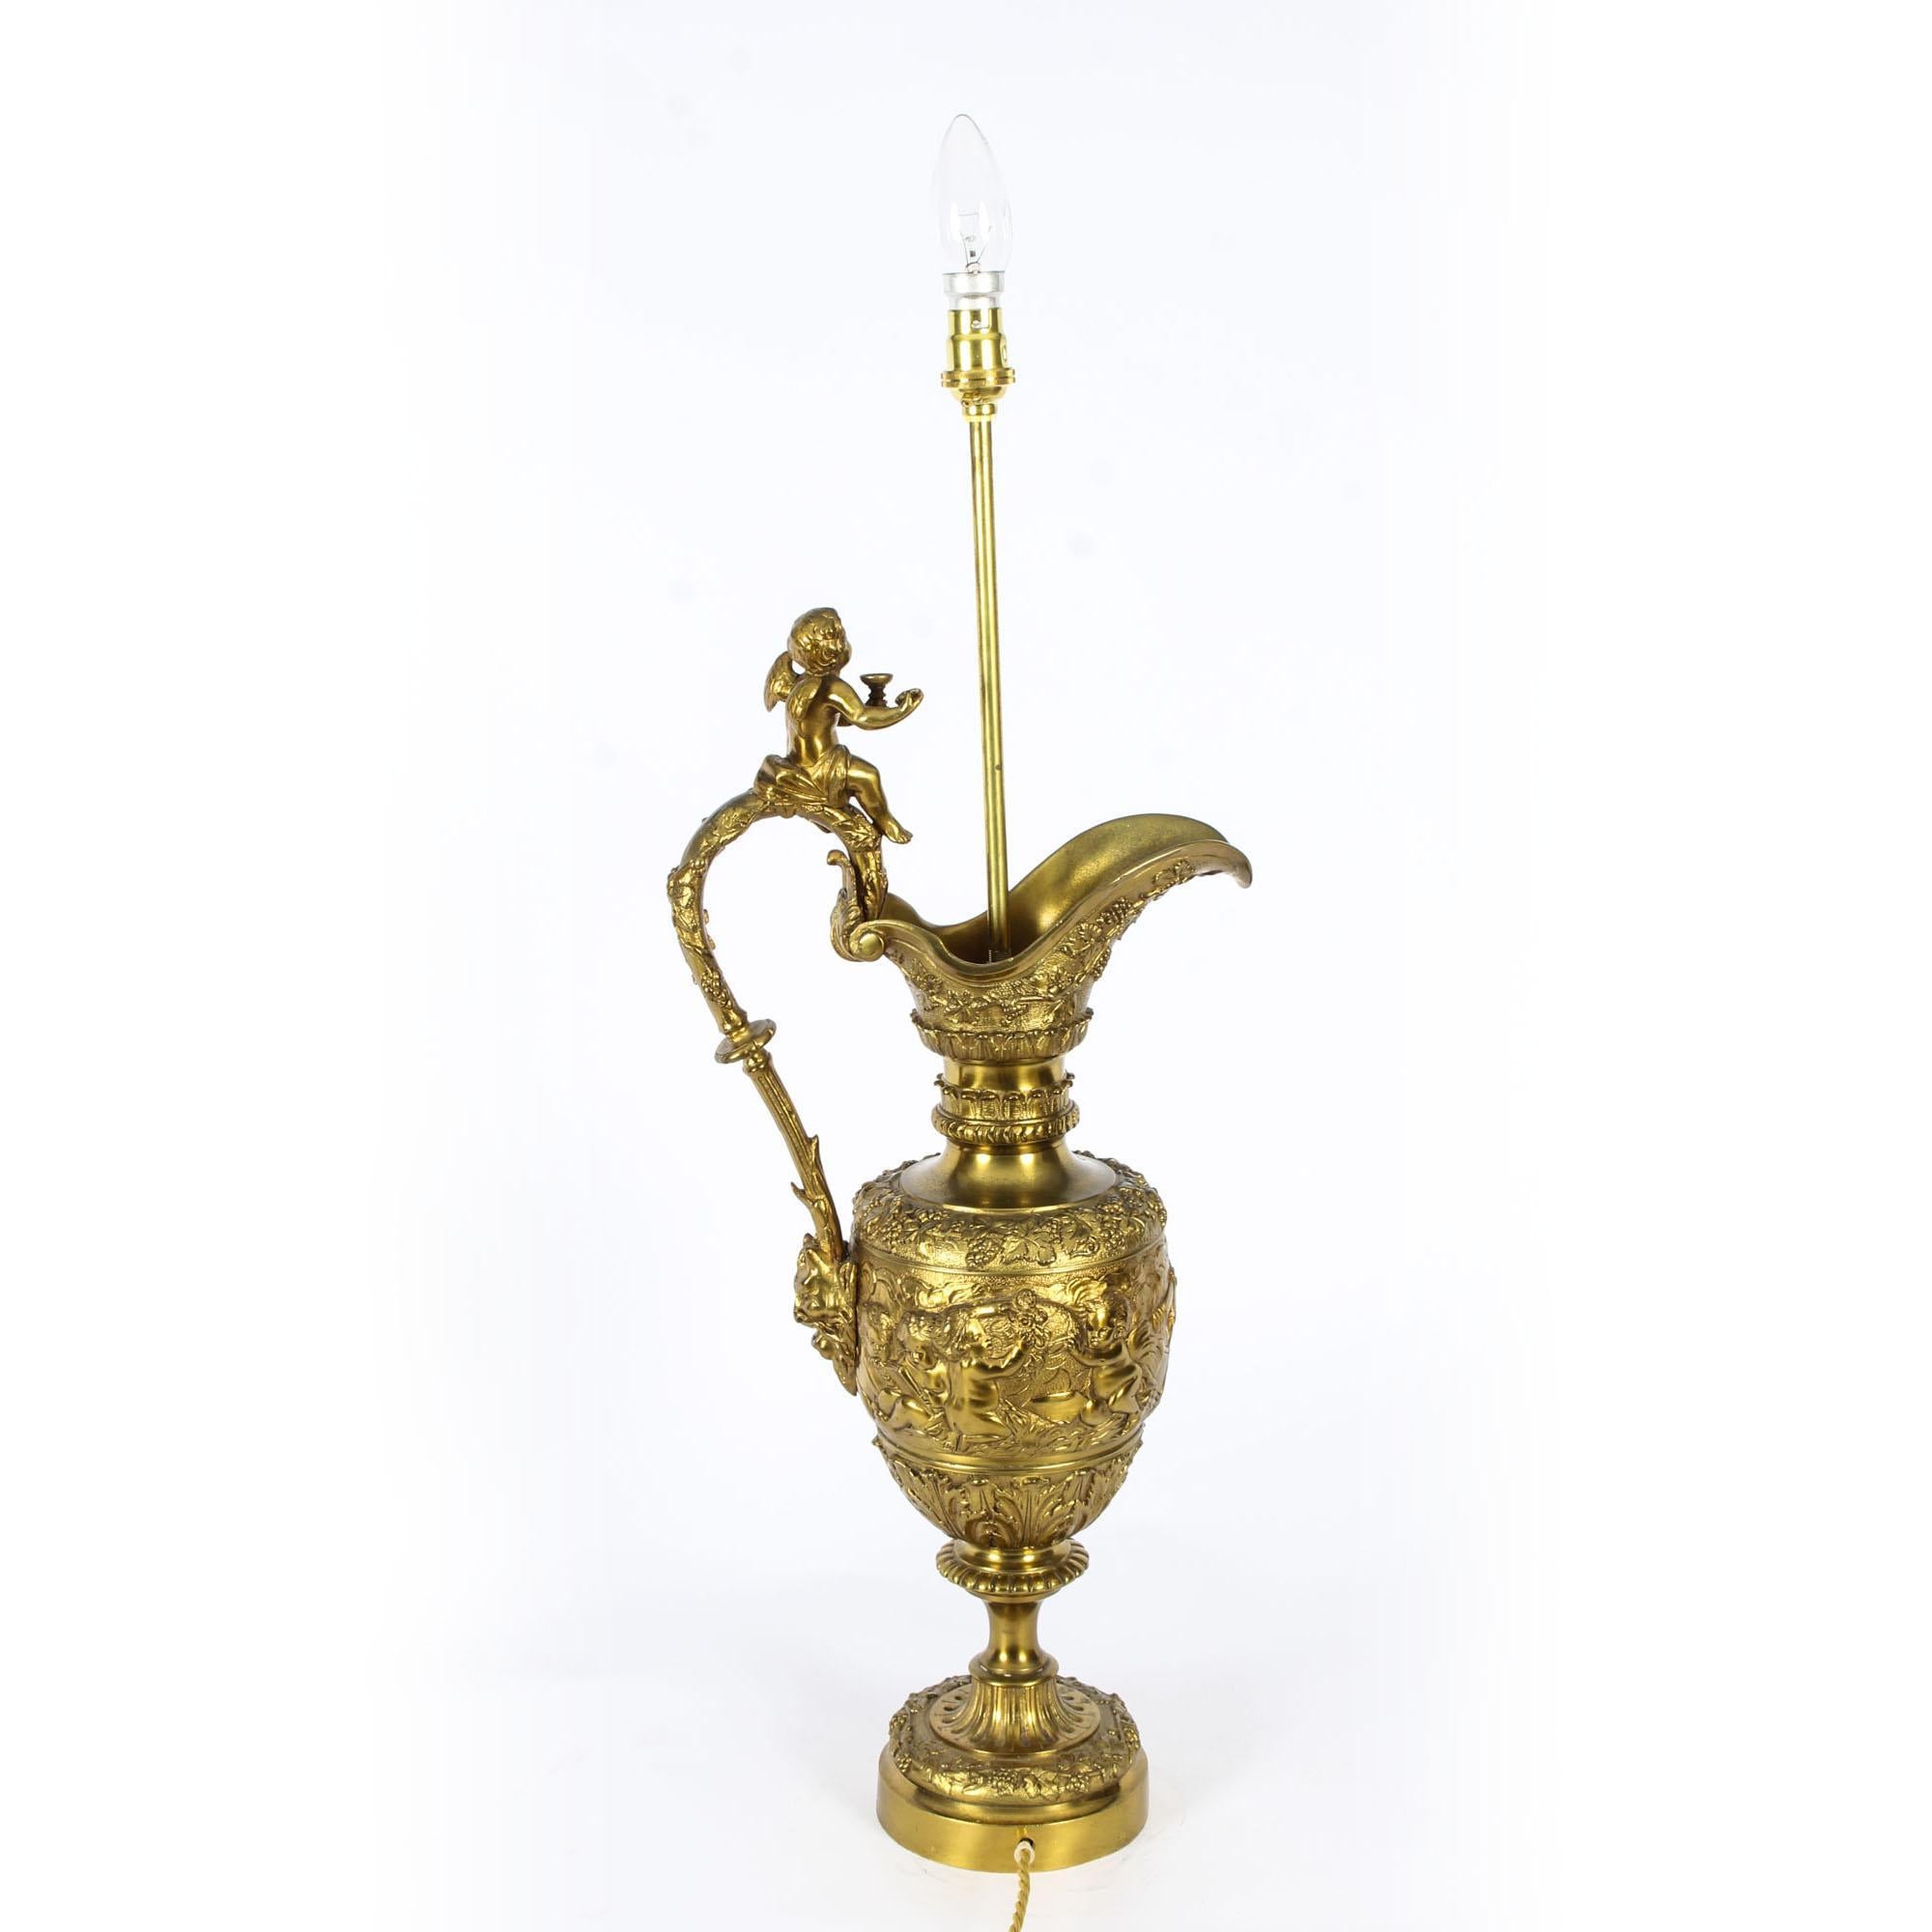 Dies ist eine wirklich hervorragende große französische antike Renaissance-Revival-Ormolu-Tischlampe aus der Zeit um 1870.

Sie ist mit Weinreben, Putten und Akanthusblättern reliefiert, wobei der schlangenförmige Griff zu einer sitzenden,